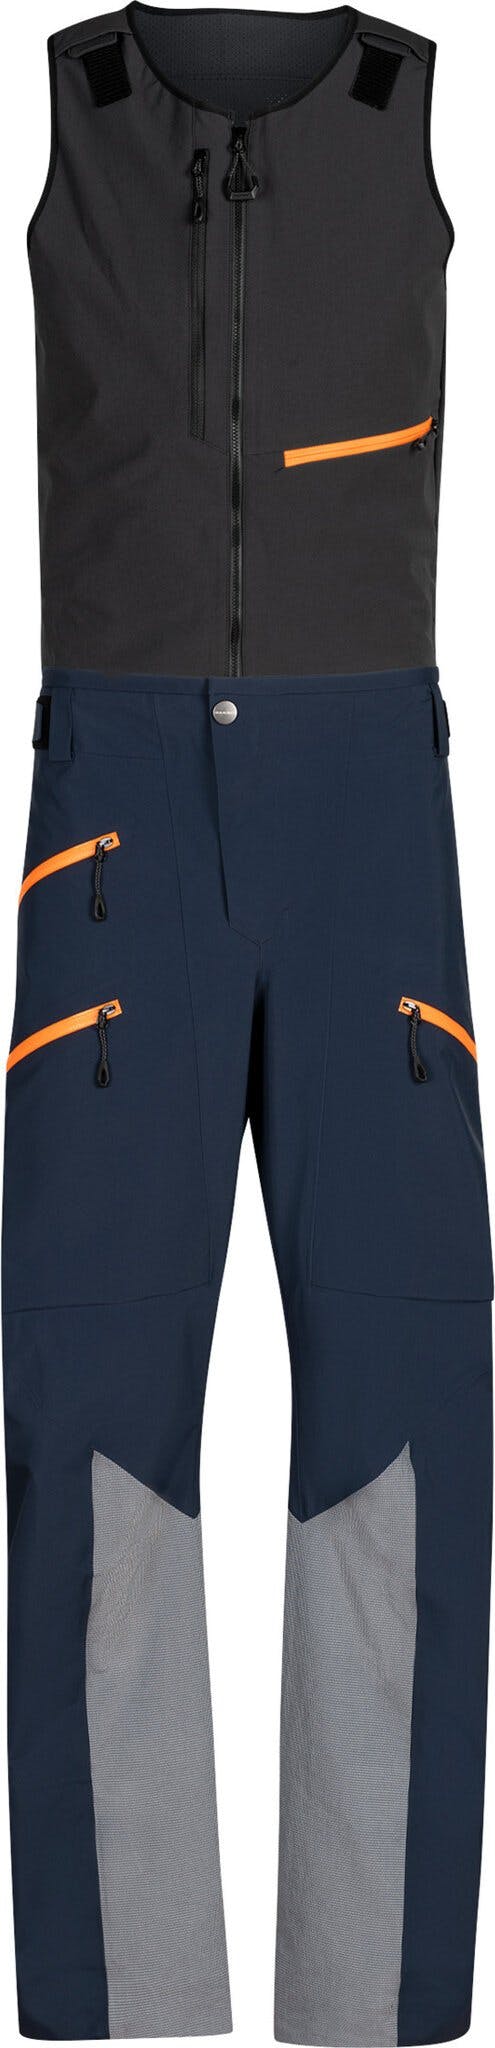 Product image for La Liste Pro HS Bib Pants - Men's